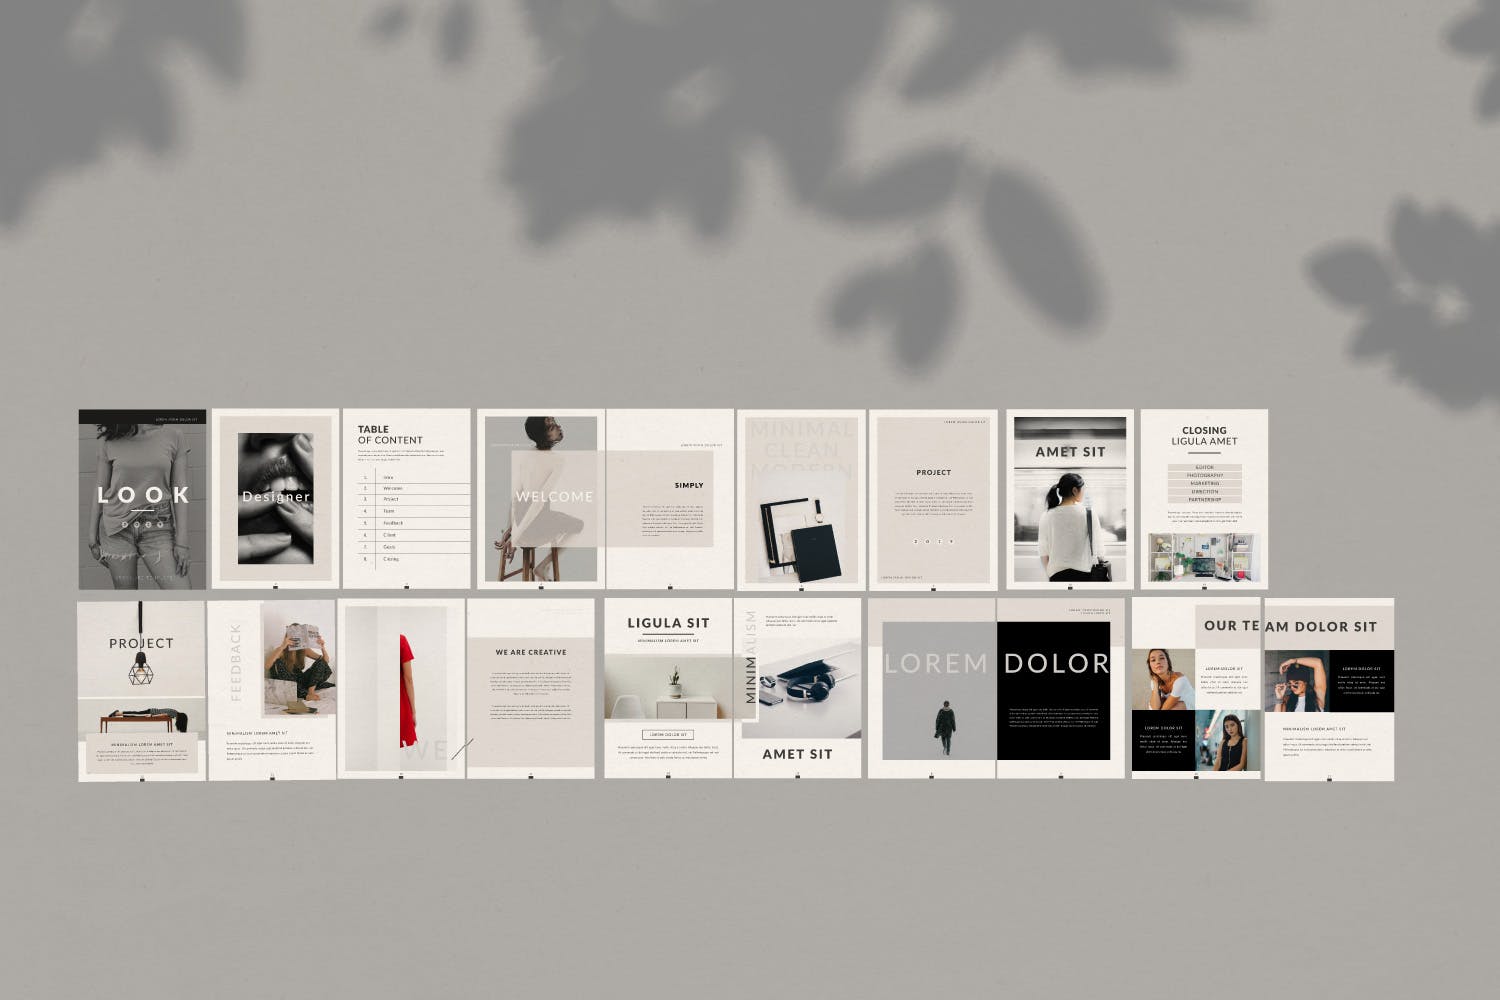 极简主义设计风格企业业务手册蚂蚁素材精选Lookbook设计模板 Lookbook插图(4)